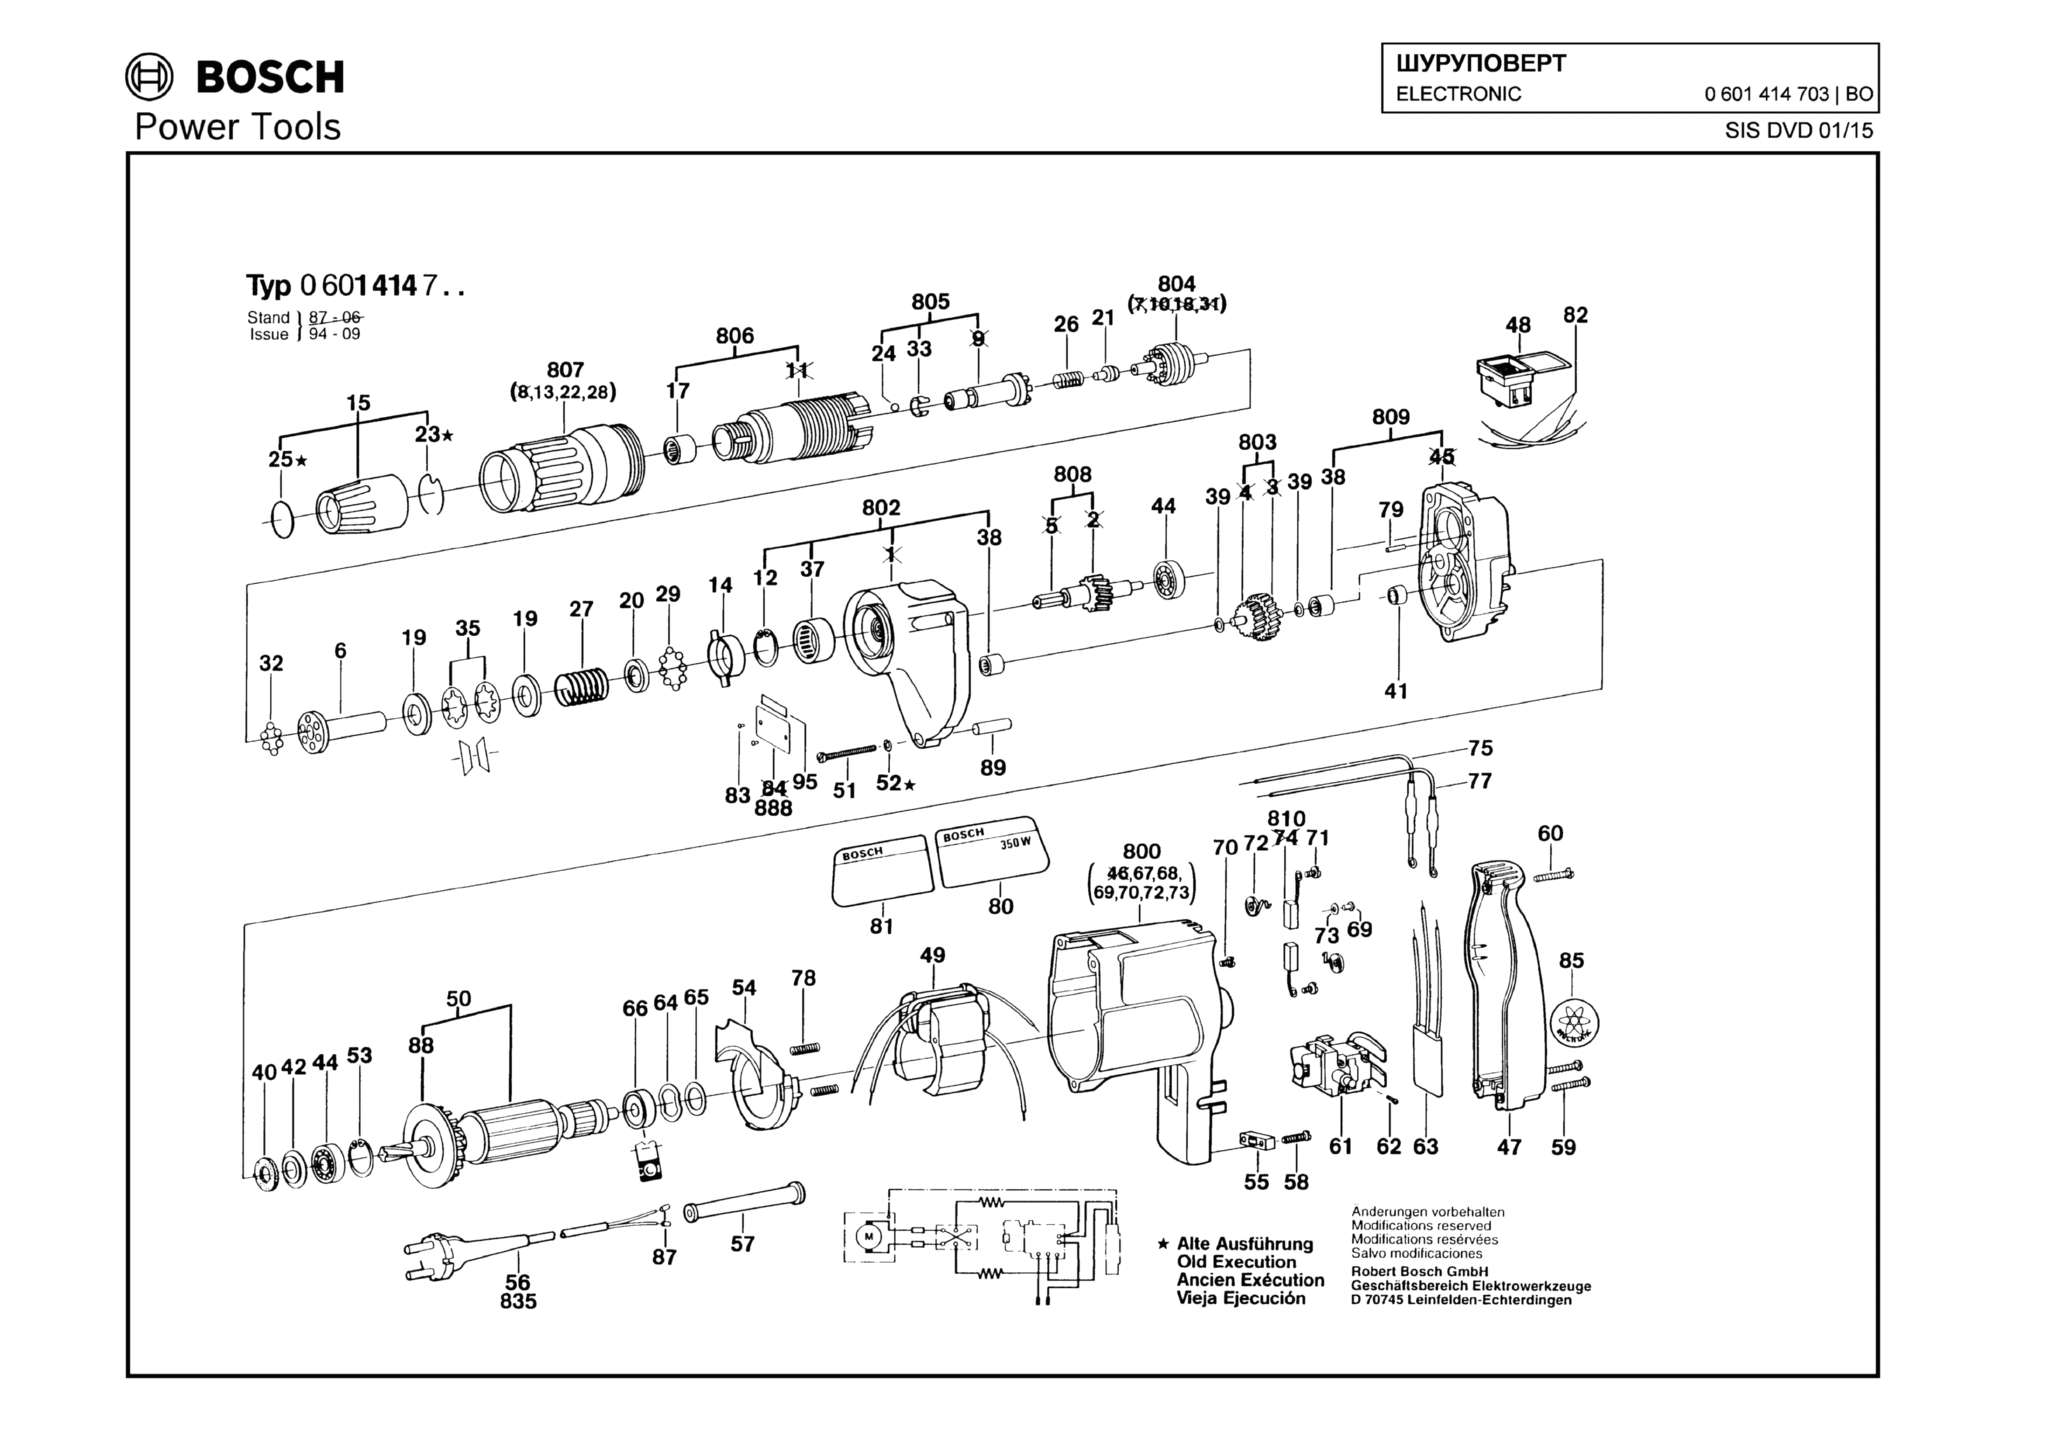 Запчасти, схема и деталировка Bosch ELECTRONIC (ТИП 0601414703)